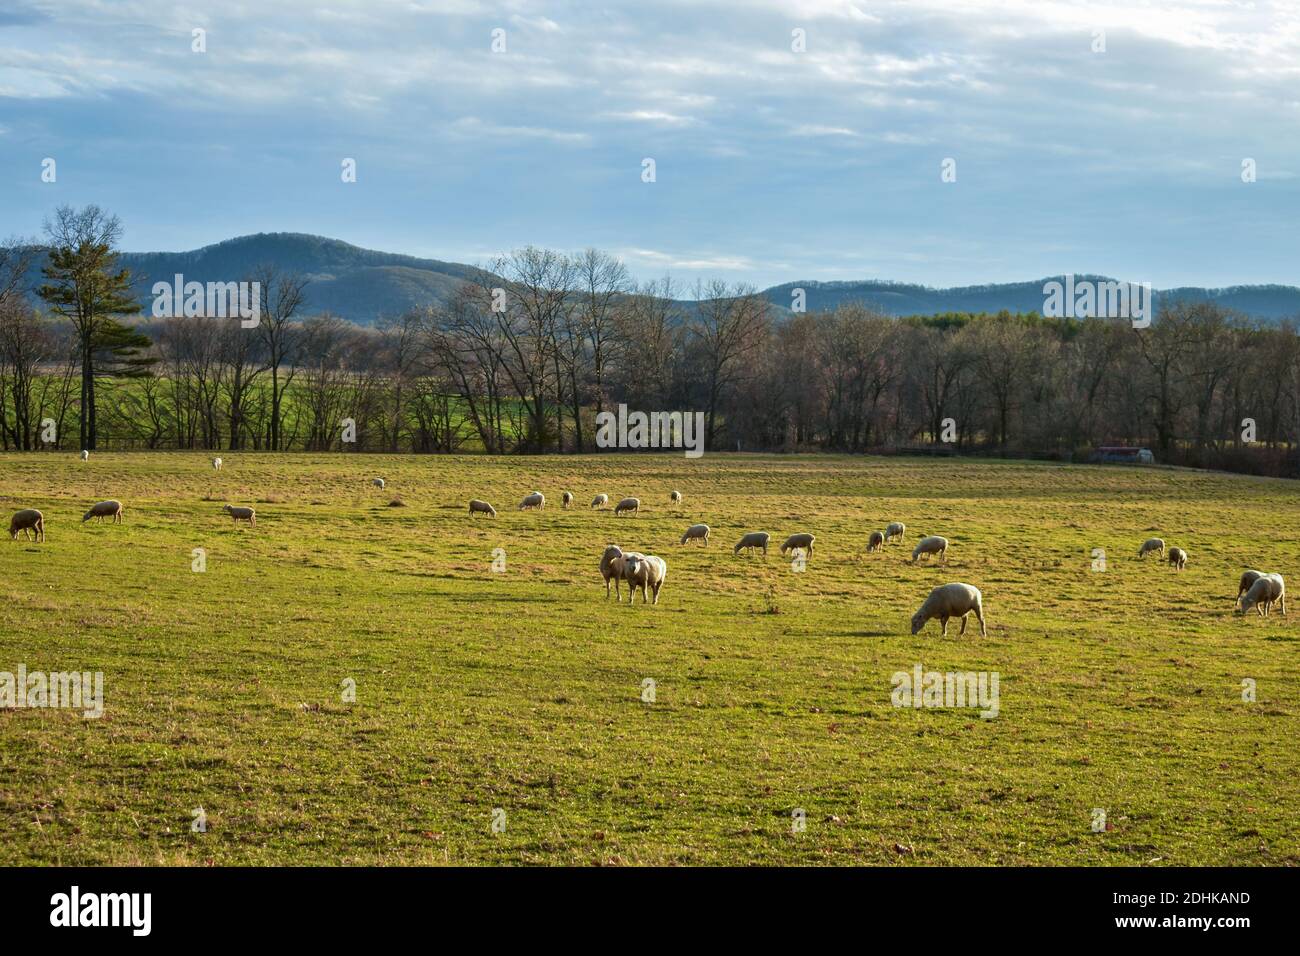 Les moutons se broutent dans un champ d'automne avec des montagnes bleues en arrière-plan. Banque D'Images